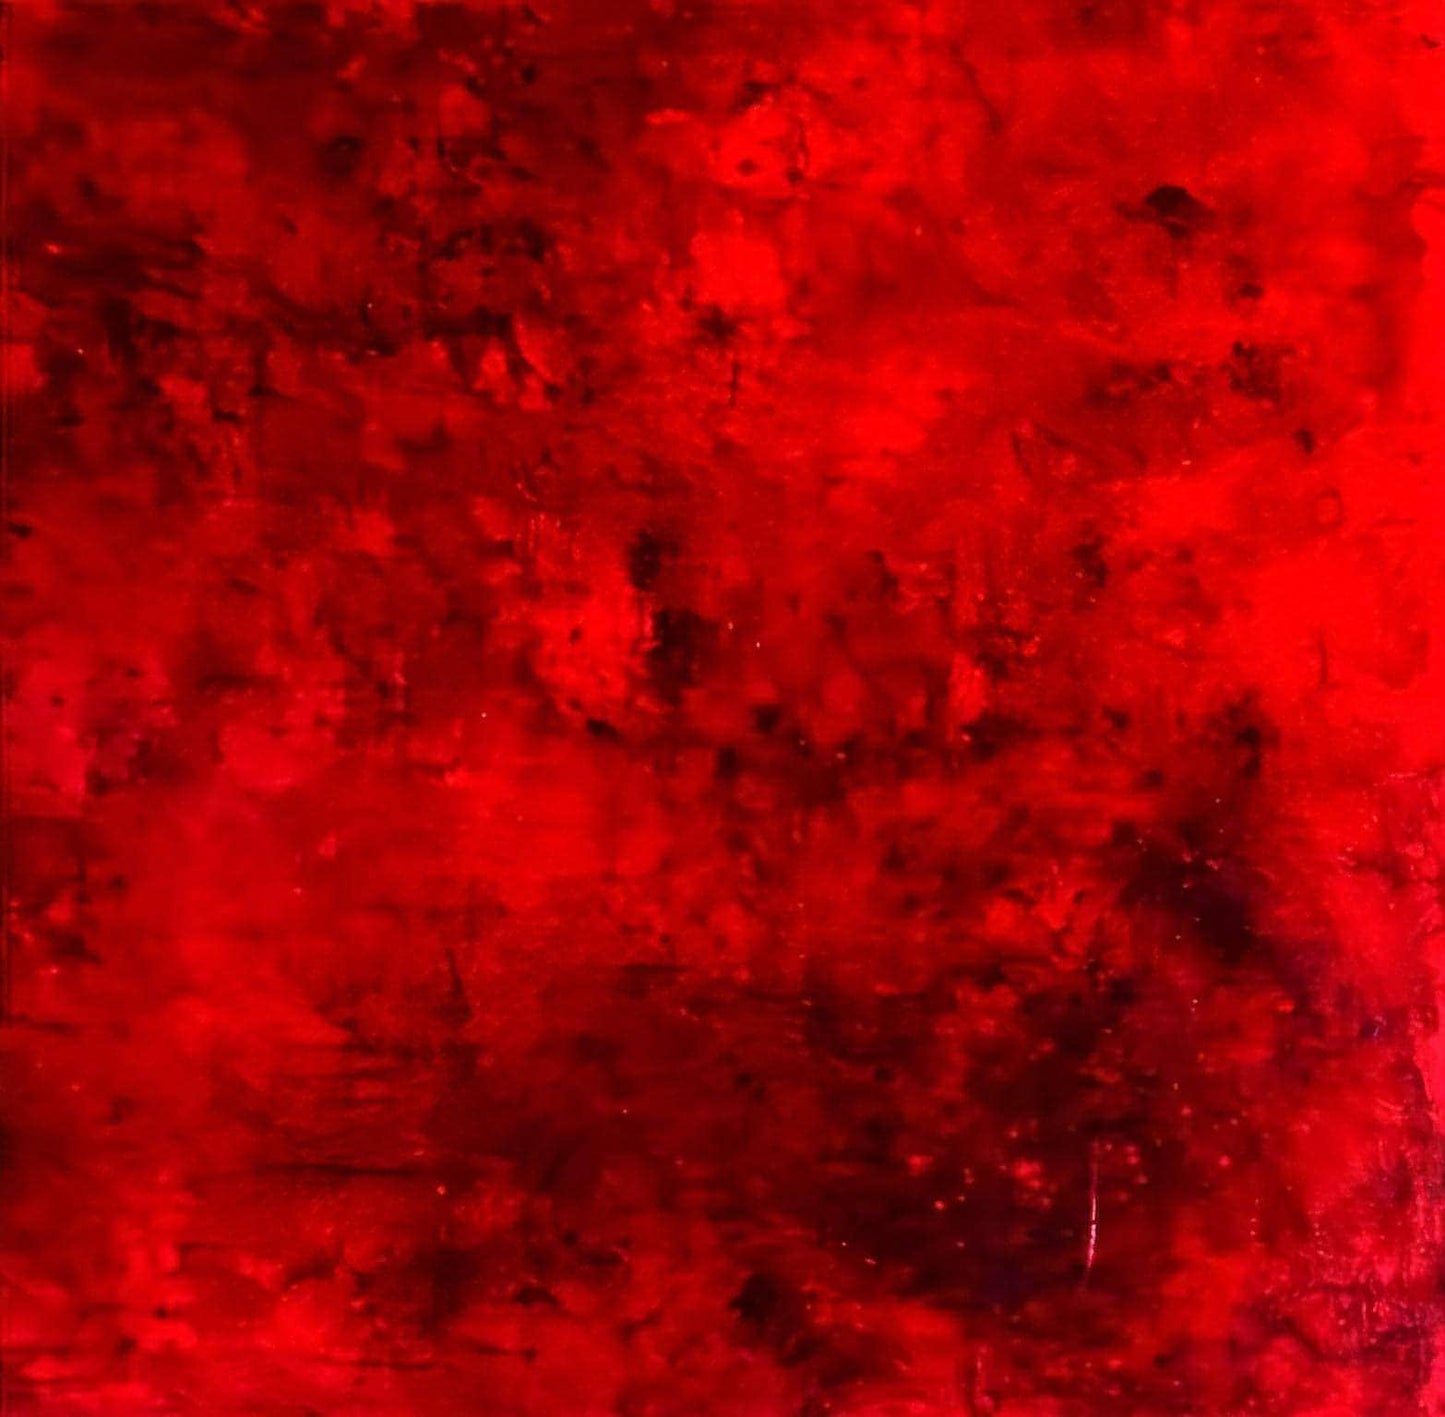  100 x 100 cm / Energiequelle / rot, 120 x 120 cm / Energiequelle / rot, 140 x 100 cm / Energiequelle / rot, 140 x 140 cm / Energiequelle / rot, 160 x 160 cm / Energiequelle / rot  abstrakte acrylbilder auf leinwand